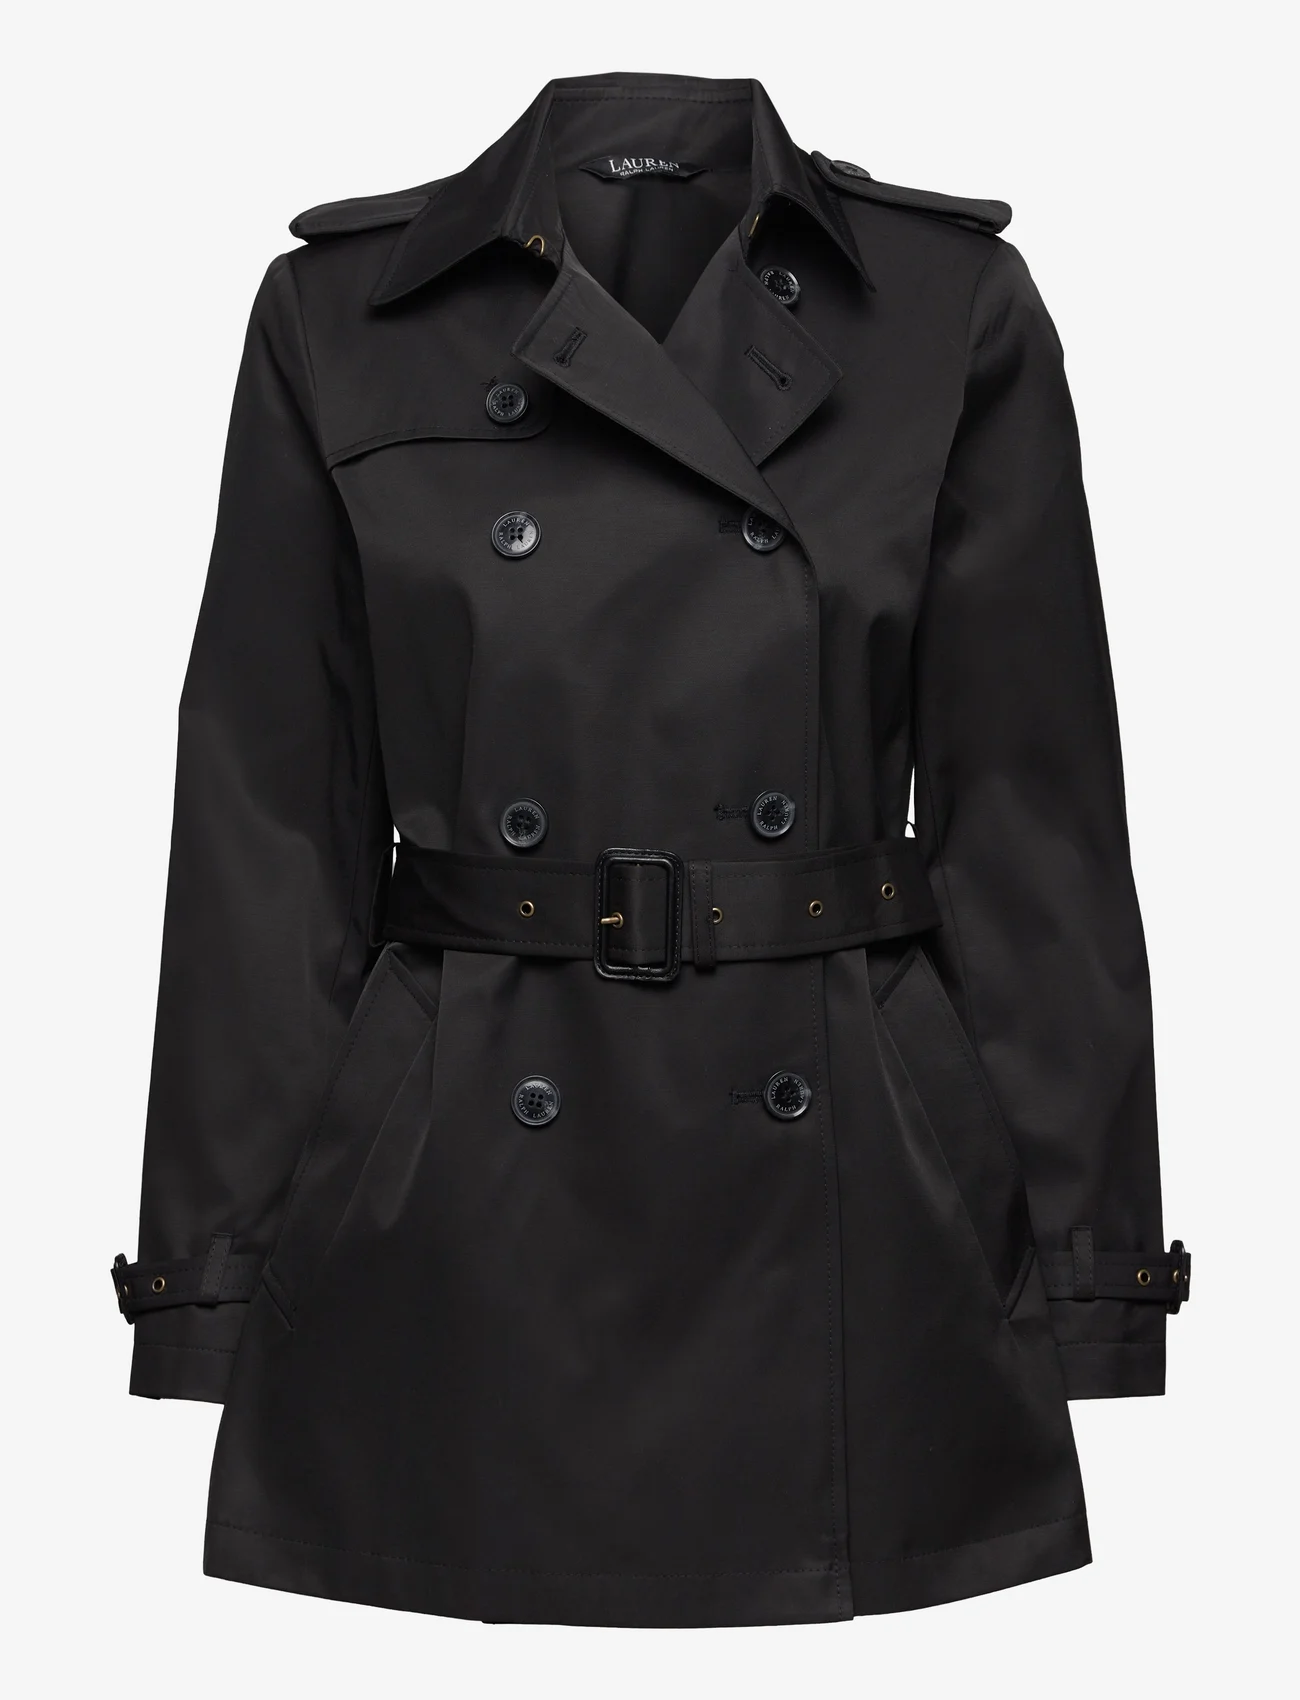 Lauren Ralph Lauren - Belted Cotton-Blend Trench Coat - spring coats - black - 1